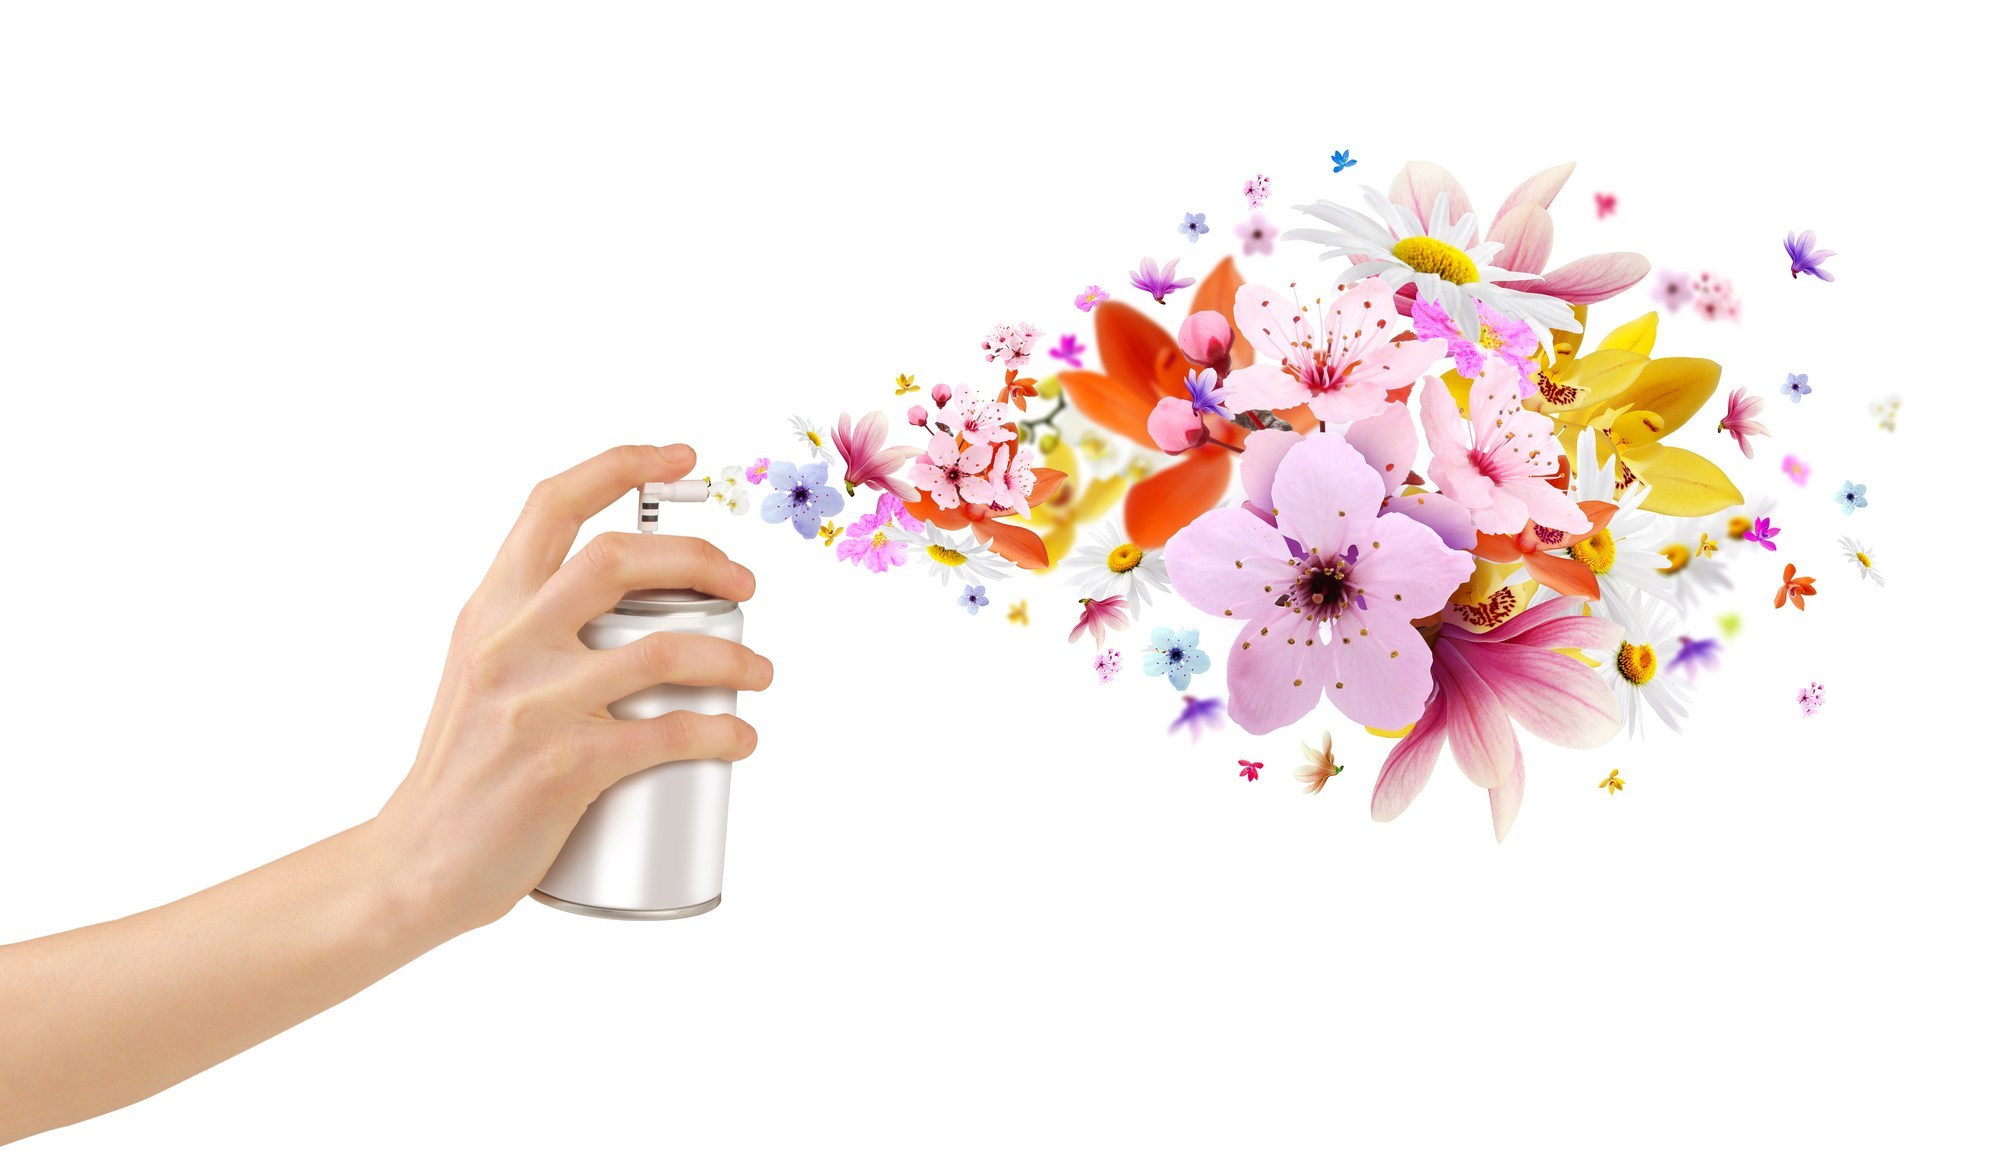 Marketing olfactif : quand l’odeur devient un véritable levier de vente